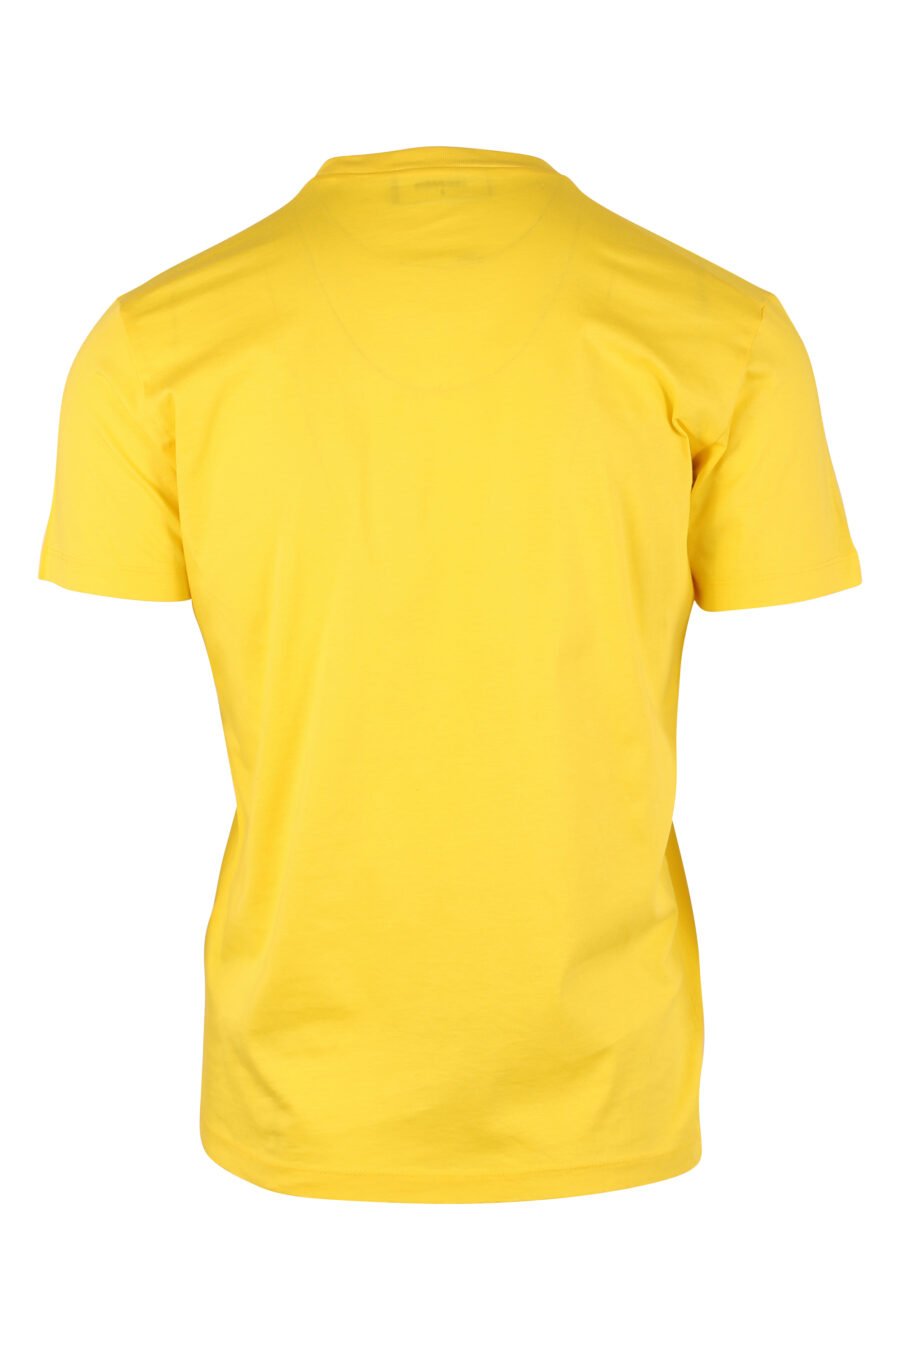 Camiseta amarilla con minilogo "icon" - IMG 9740